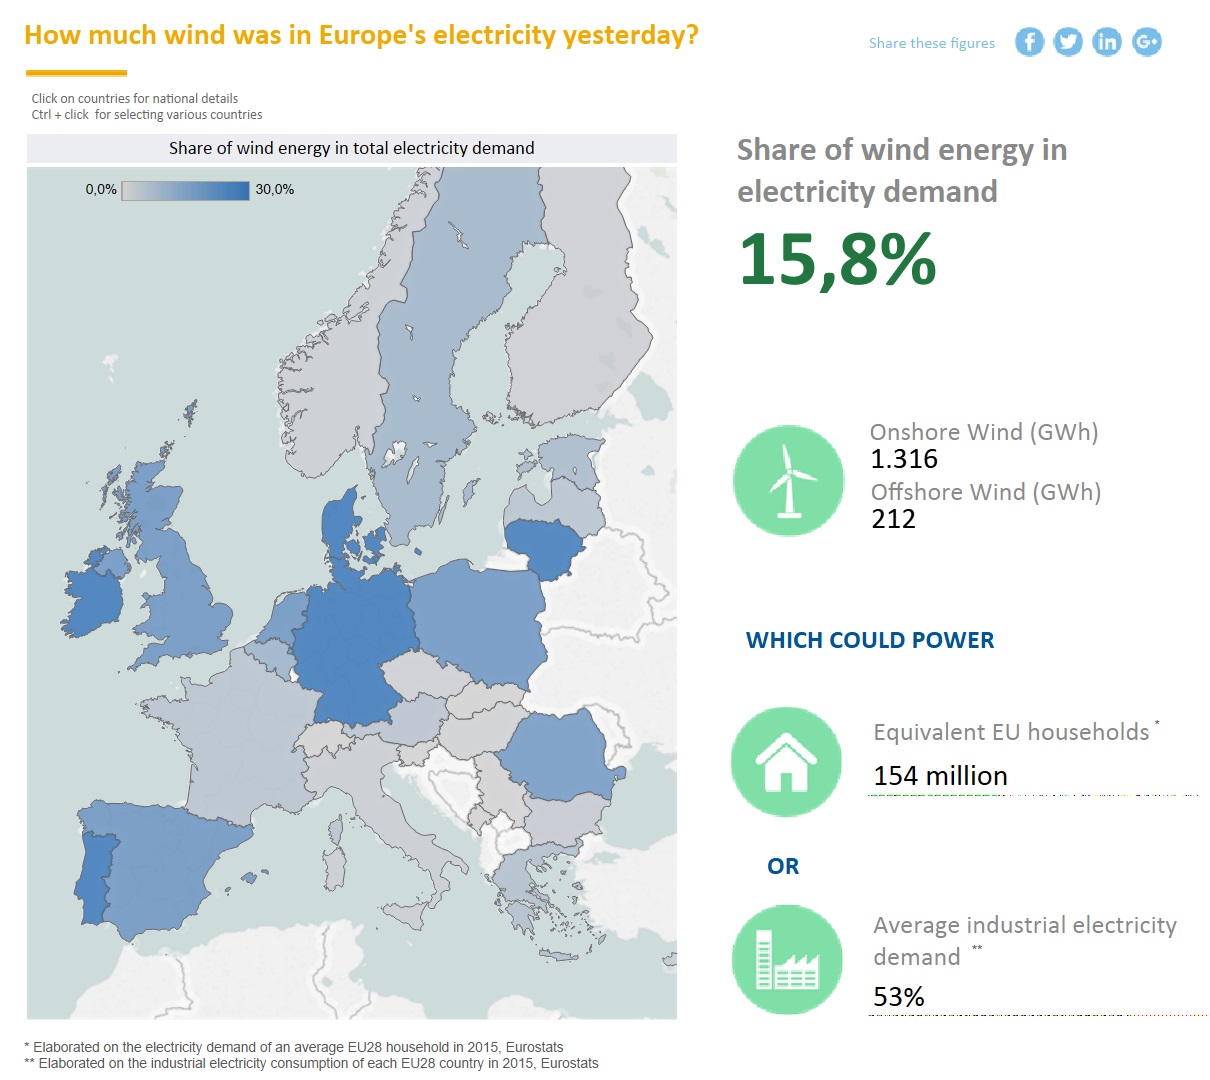 Der Anteil der Windenergie an der Stromnachfrage betrug am 20. Februar 2017 in Europa 15,8 Prozent. (Grafik: <a href="https://windeurope.org/about-wind/wind-energy-today/" target="_blank">WindEurope</a>)